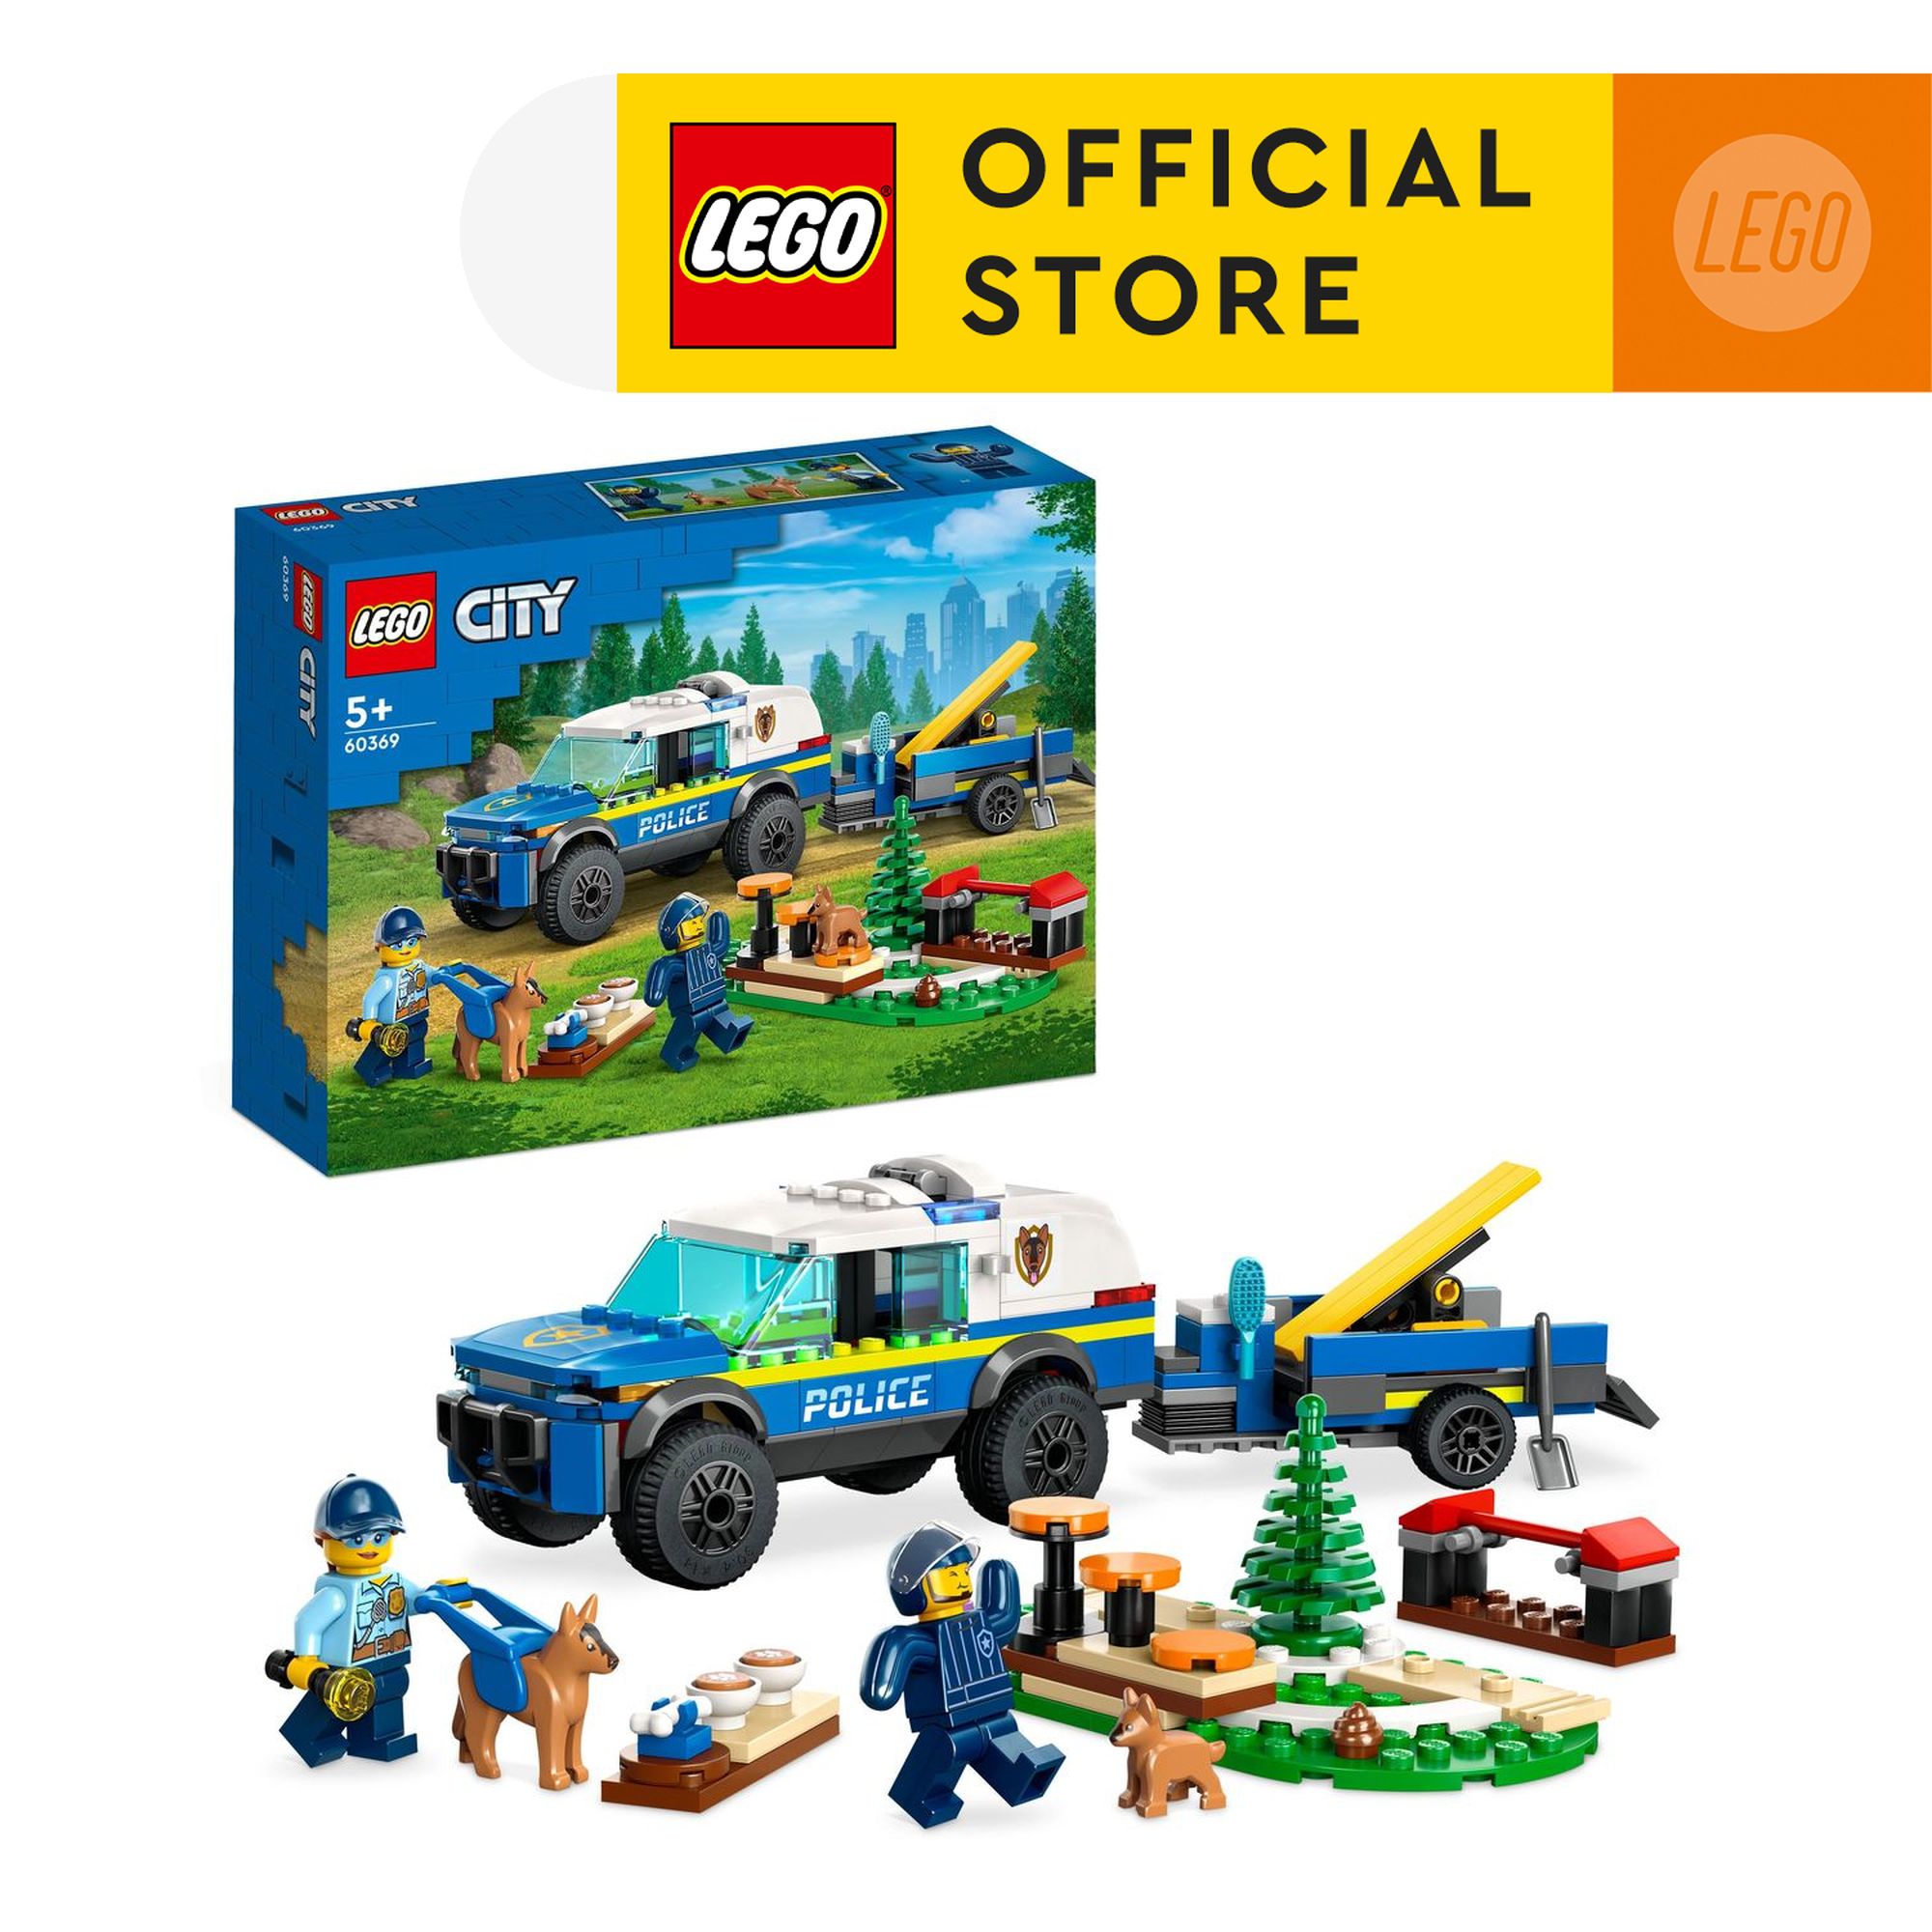 LEGO City 60369 Xe Huấn Luyện Cảnh Khuyển (197 Chi Tiết)